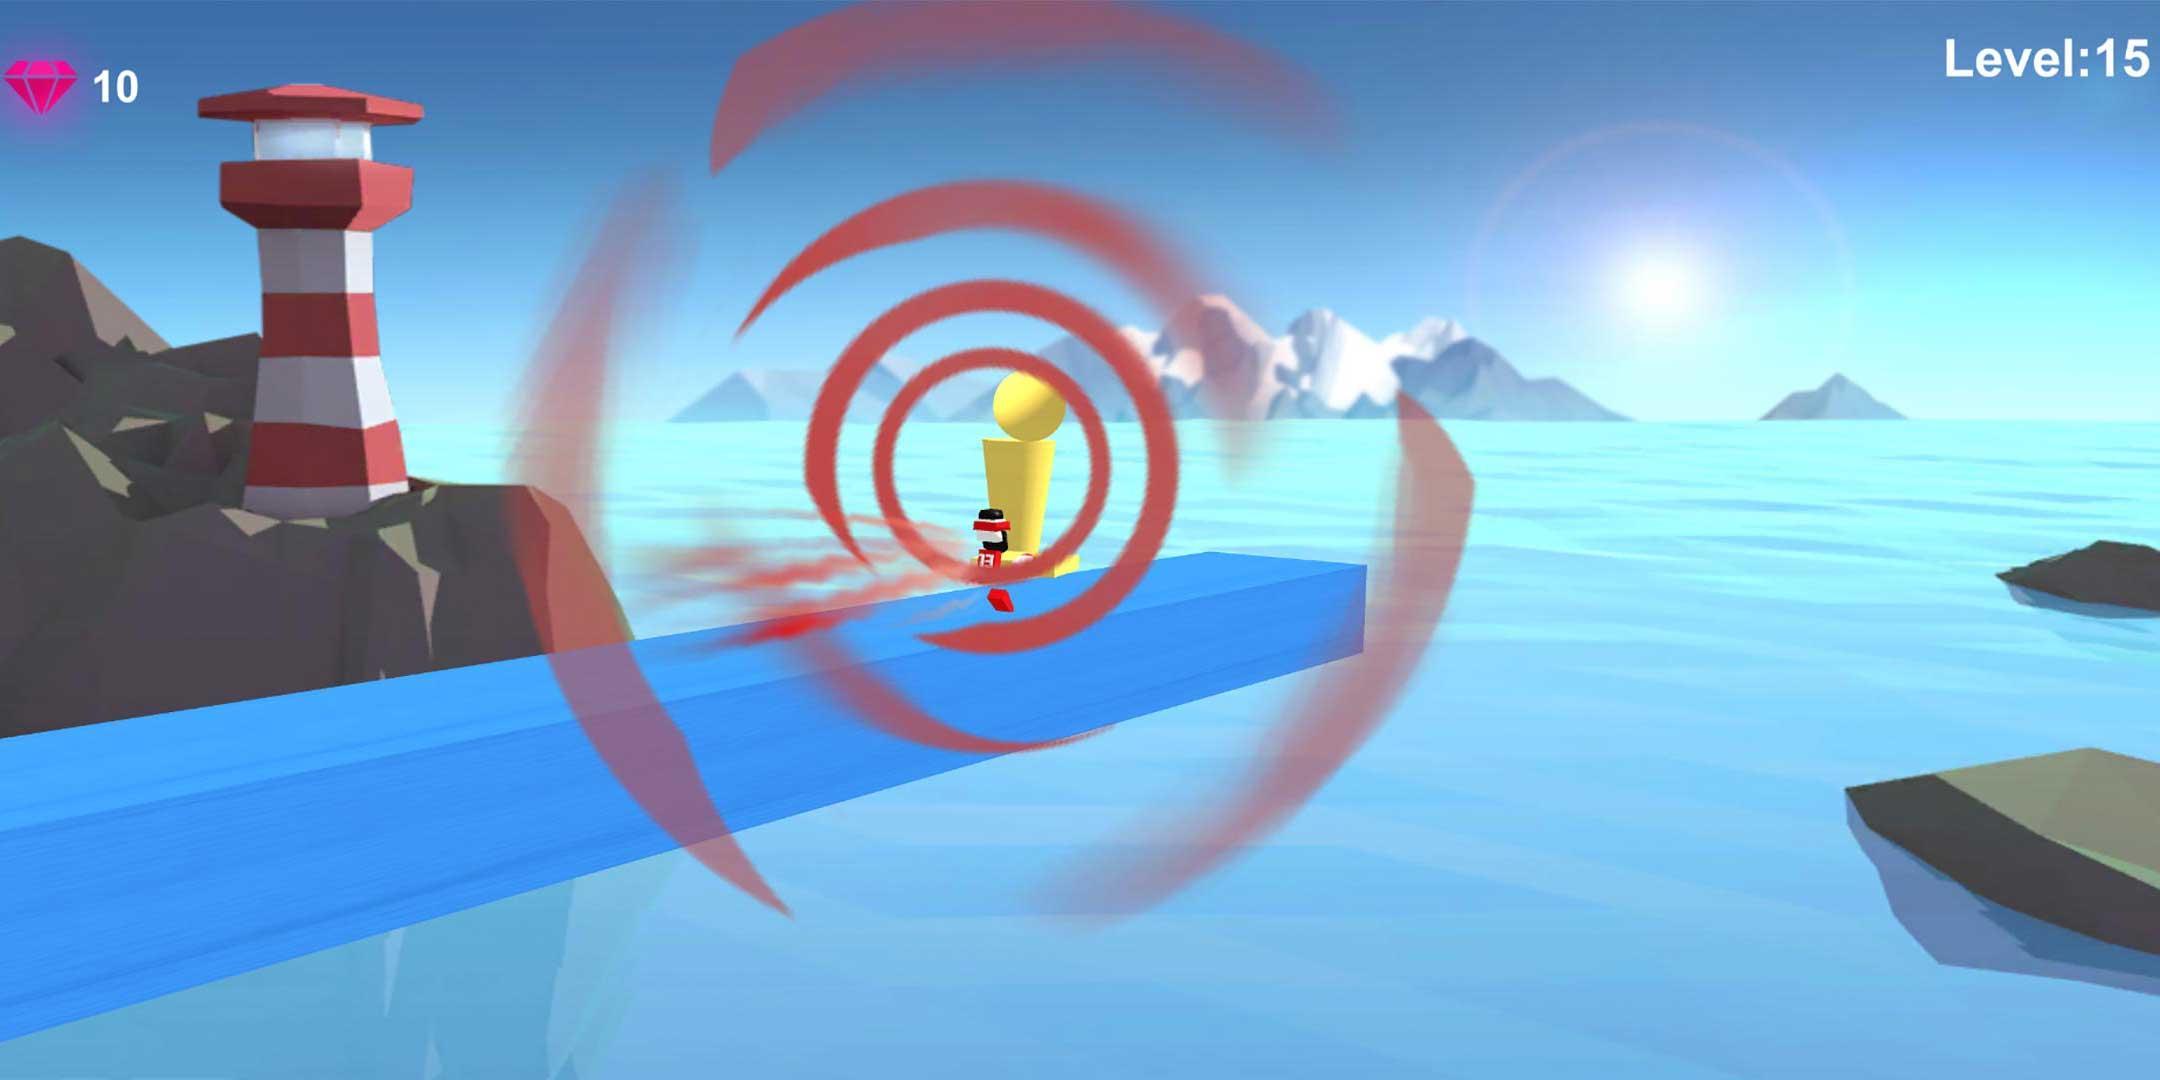 Screenshot of Super Go